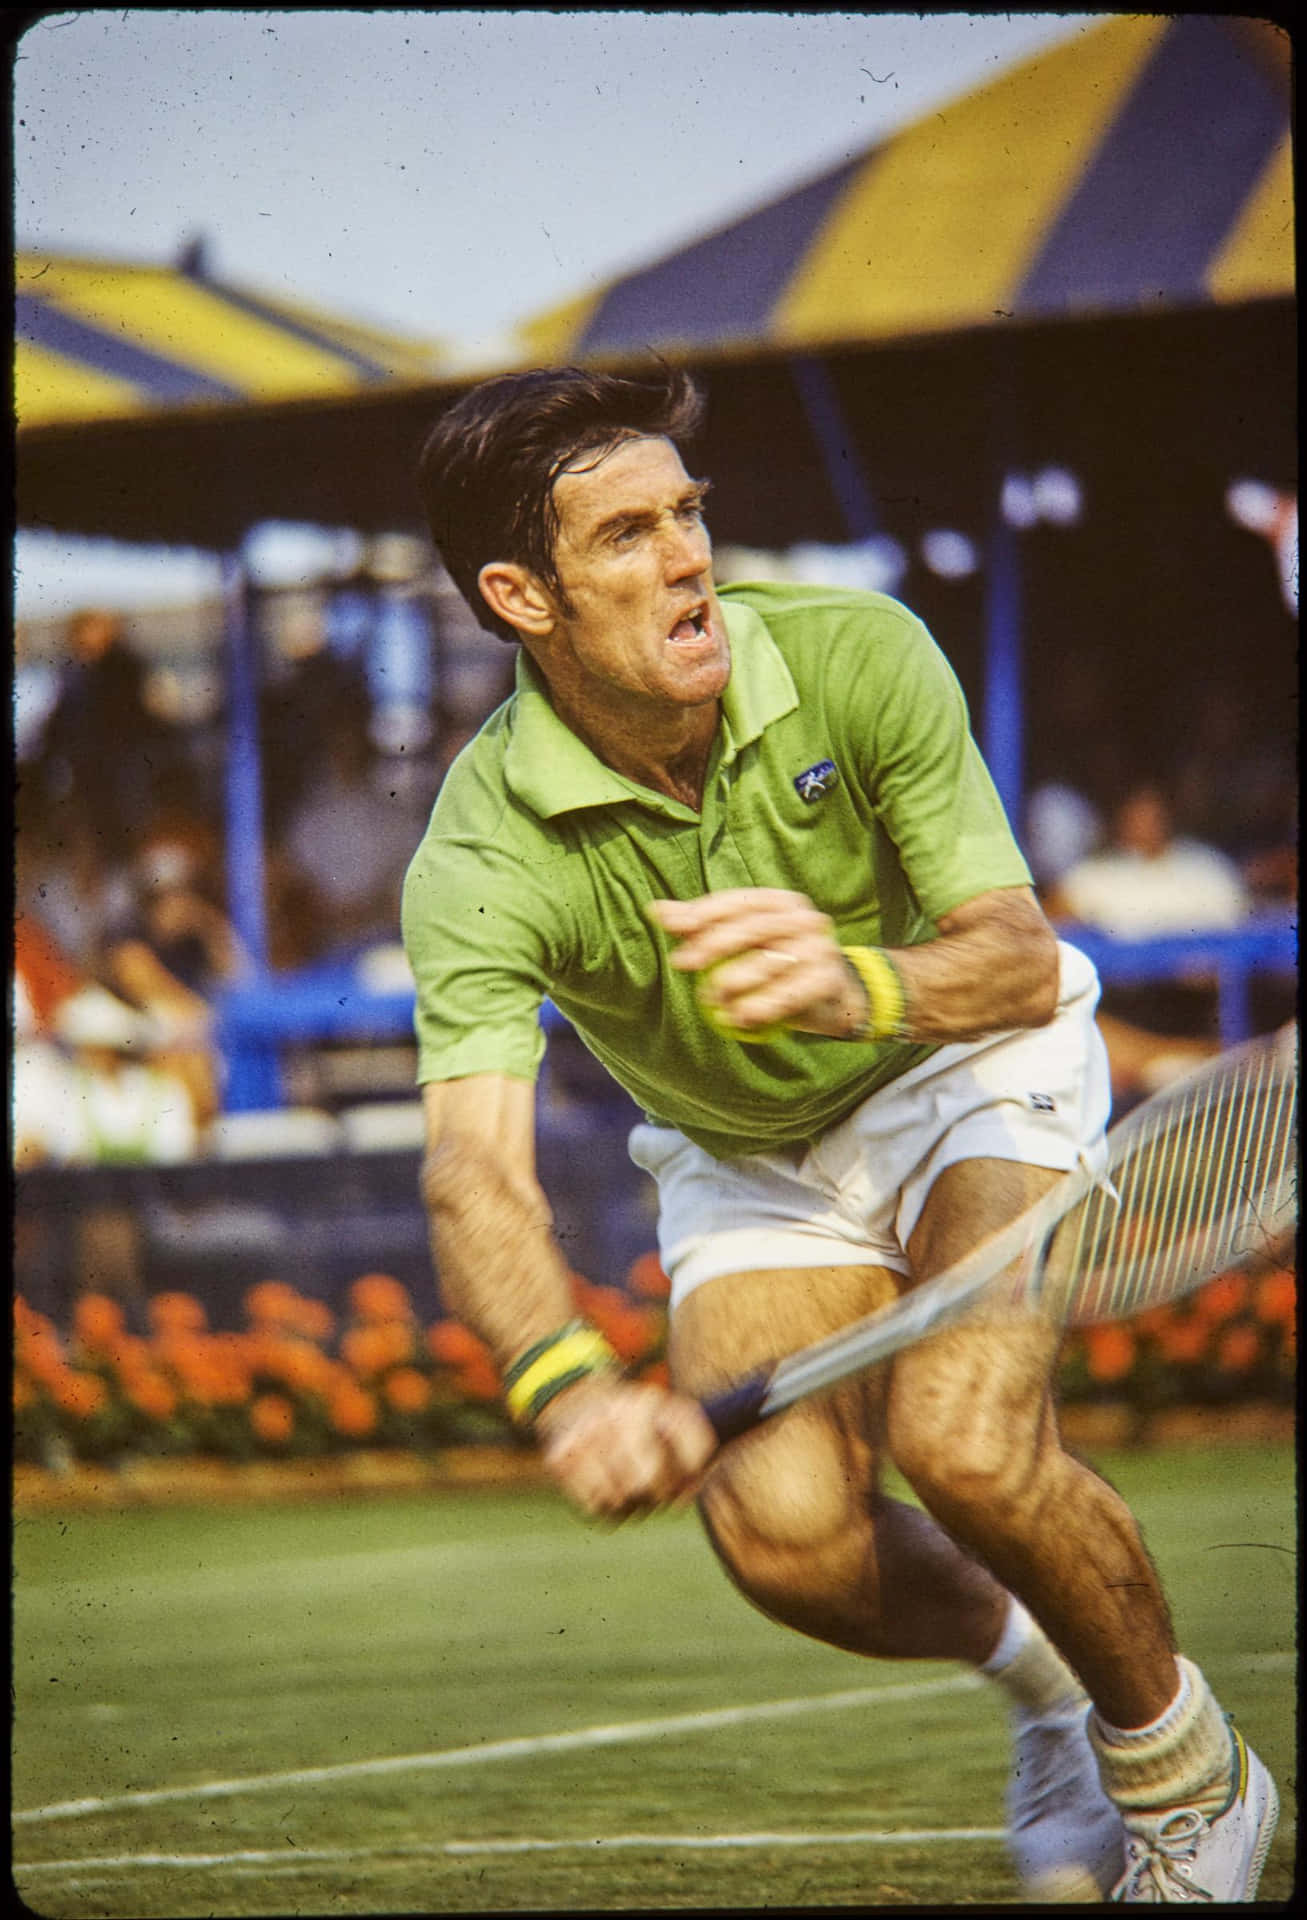 Ken Rosewall Tennis Ball Hit Moving Photography Wallpaper